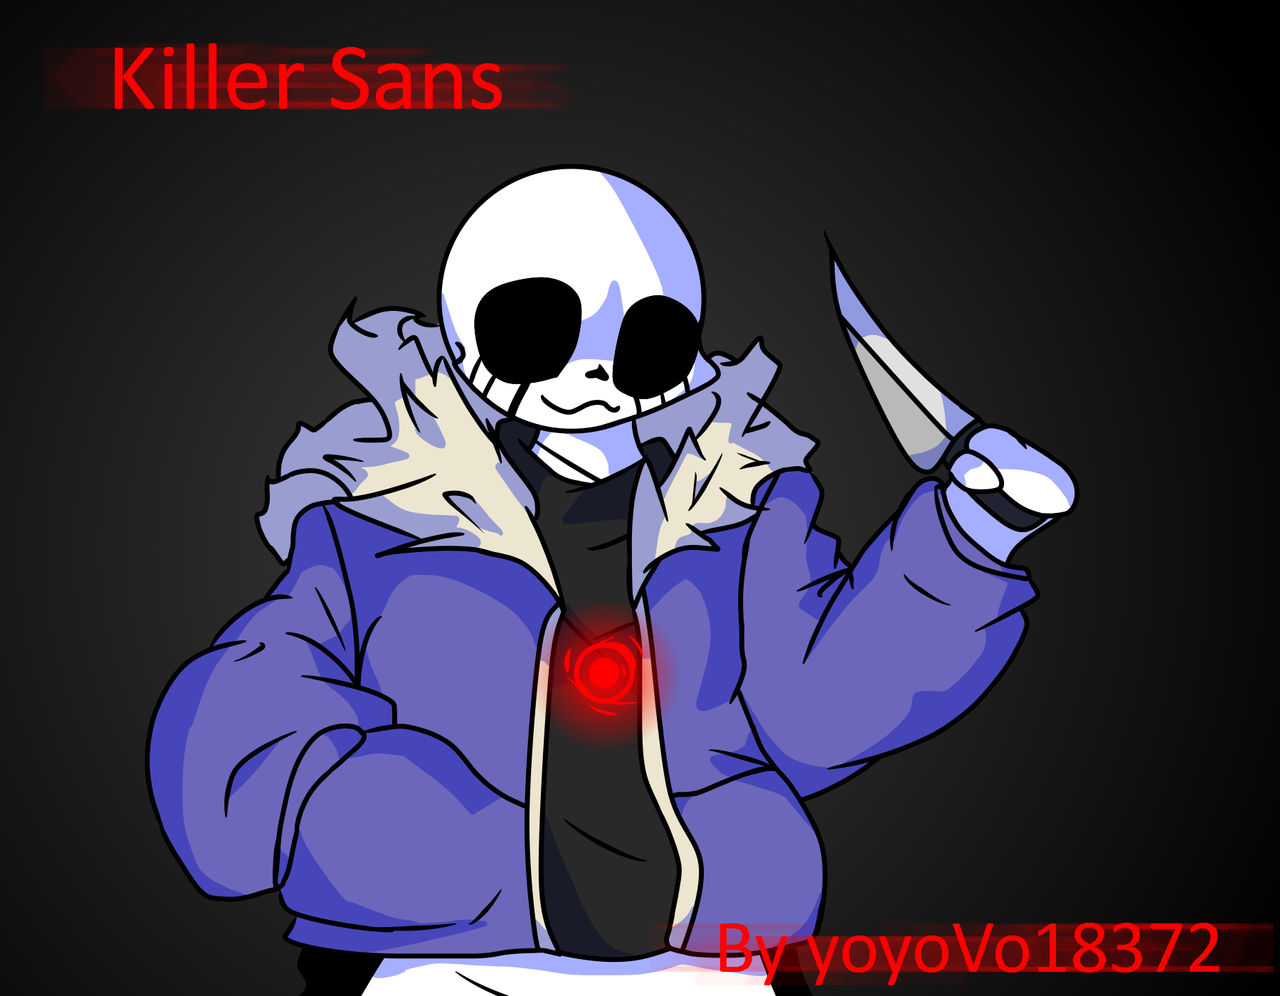 Killer Sans: REWRITTEN by TheRealAllanTorngren on DeviantArt